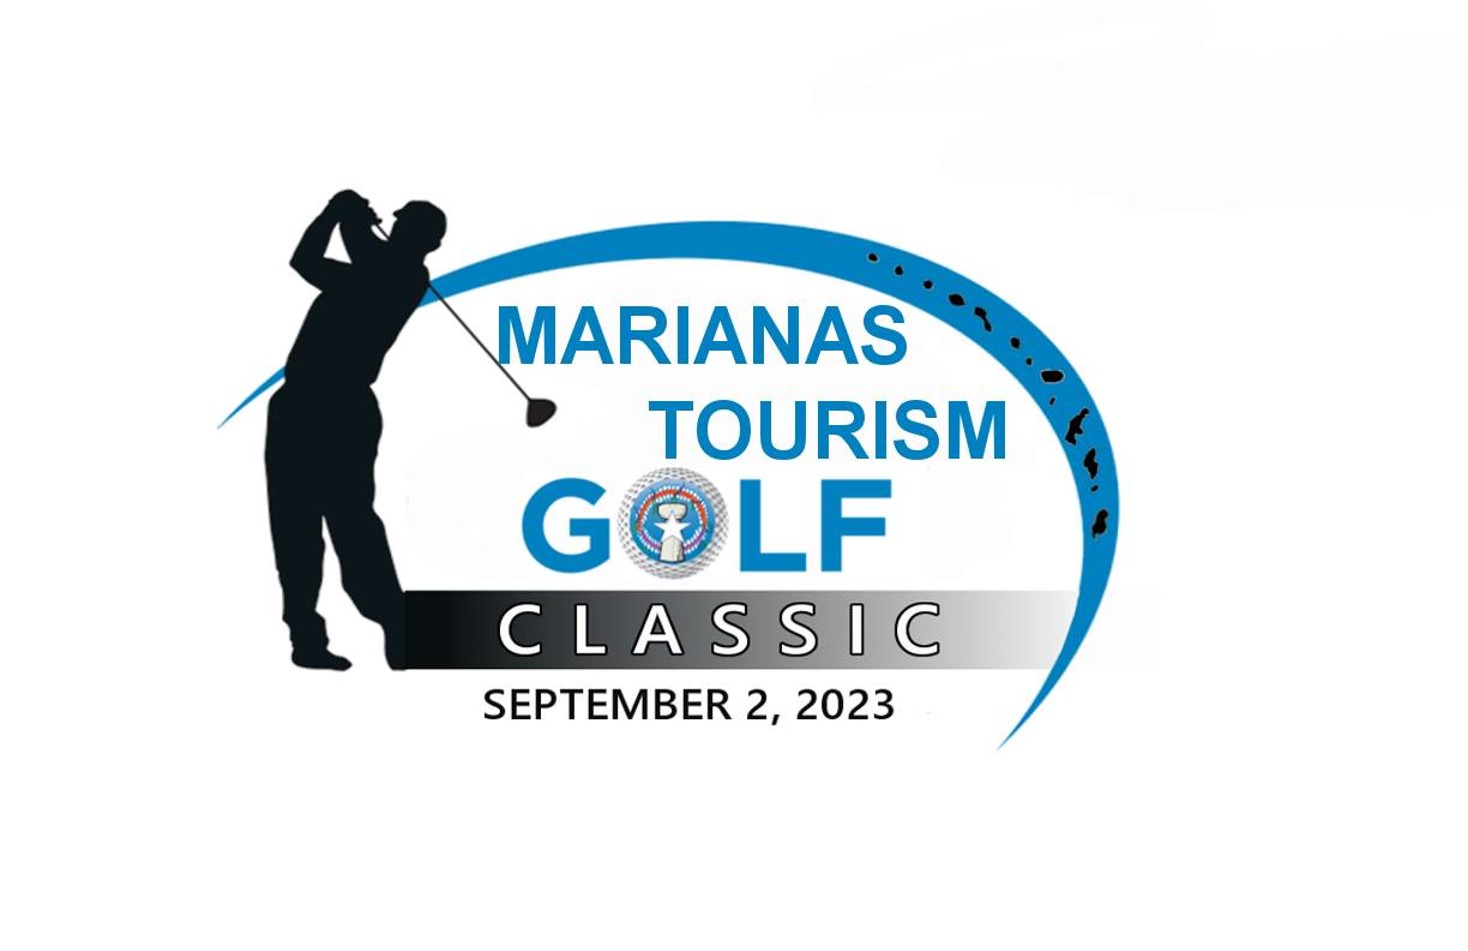 2023 마리아나 투어리즘 골프 클래식 로고.jpg